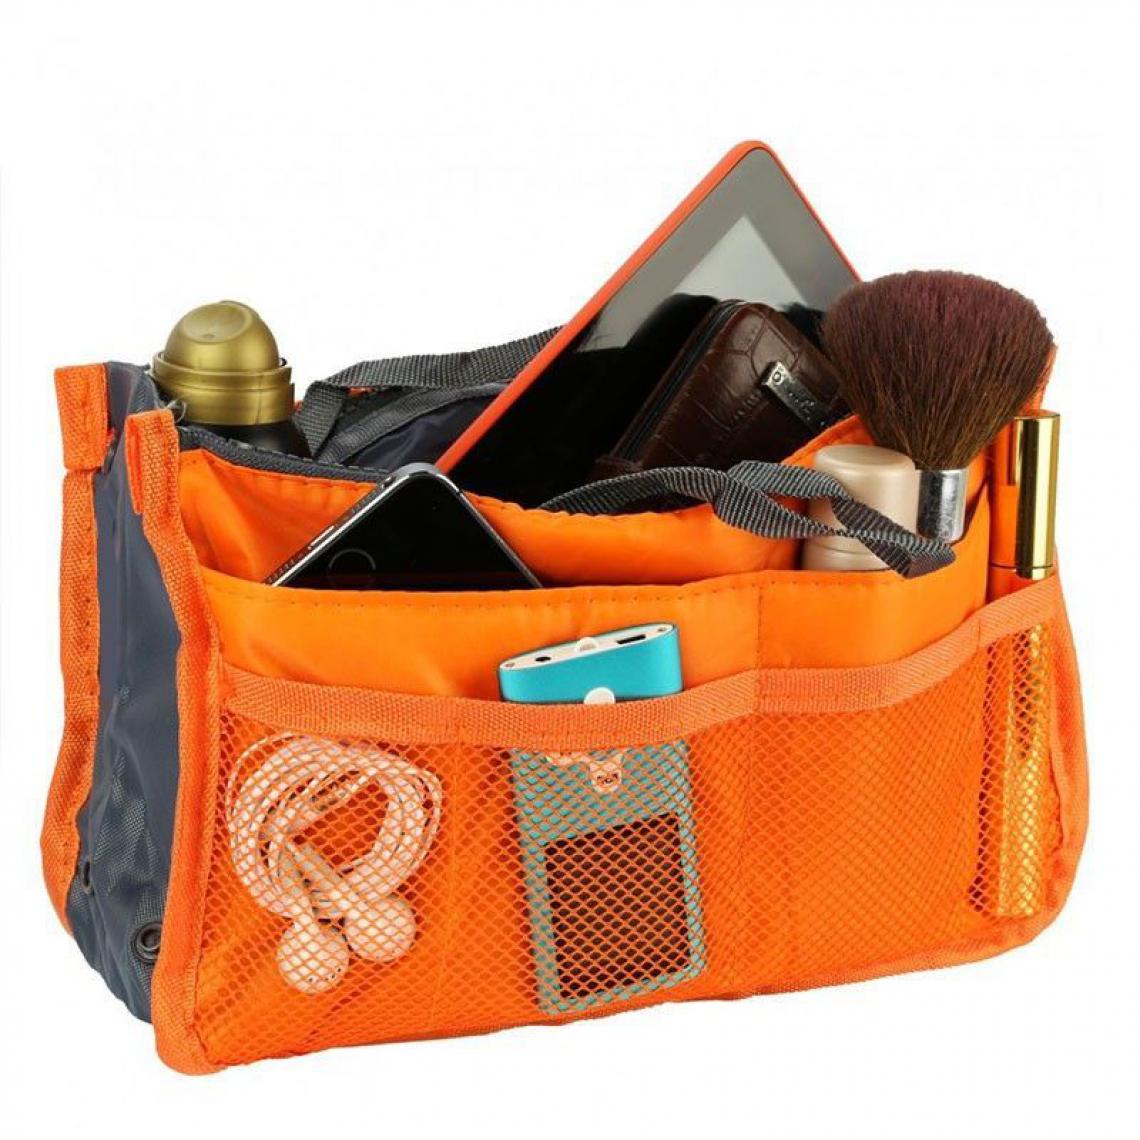 Inconnu - Organisateur de sac à main - Orange - Rangements placards et tiroirs